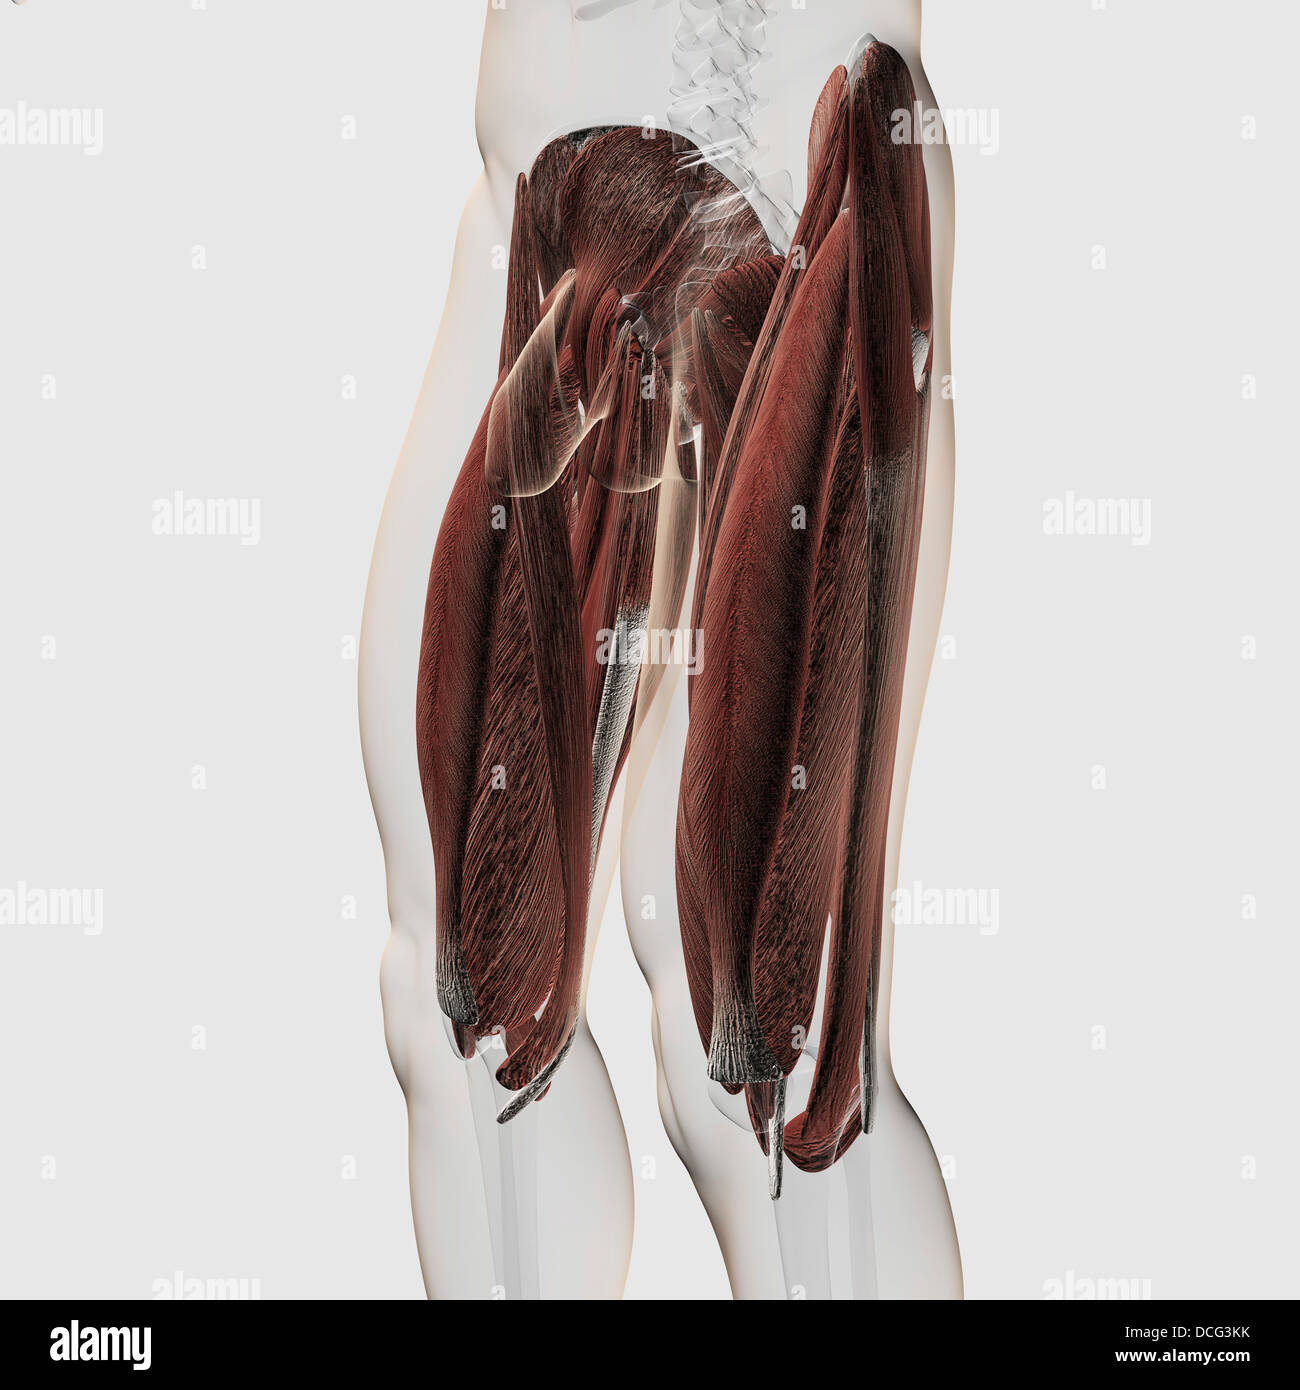 Maschio anatomia muscolare delle gambe umane, vista laterale. Foto Stock